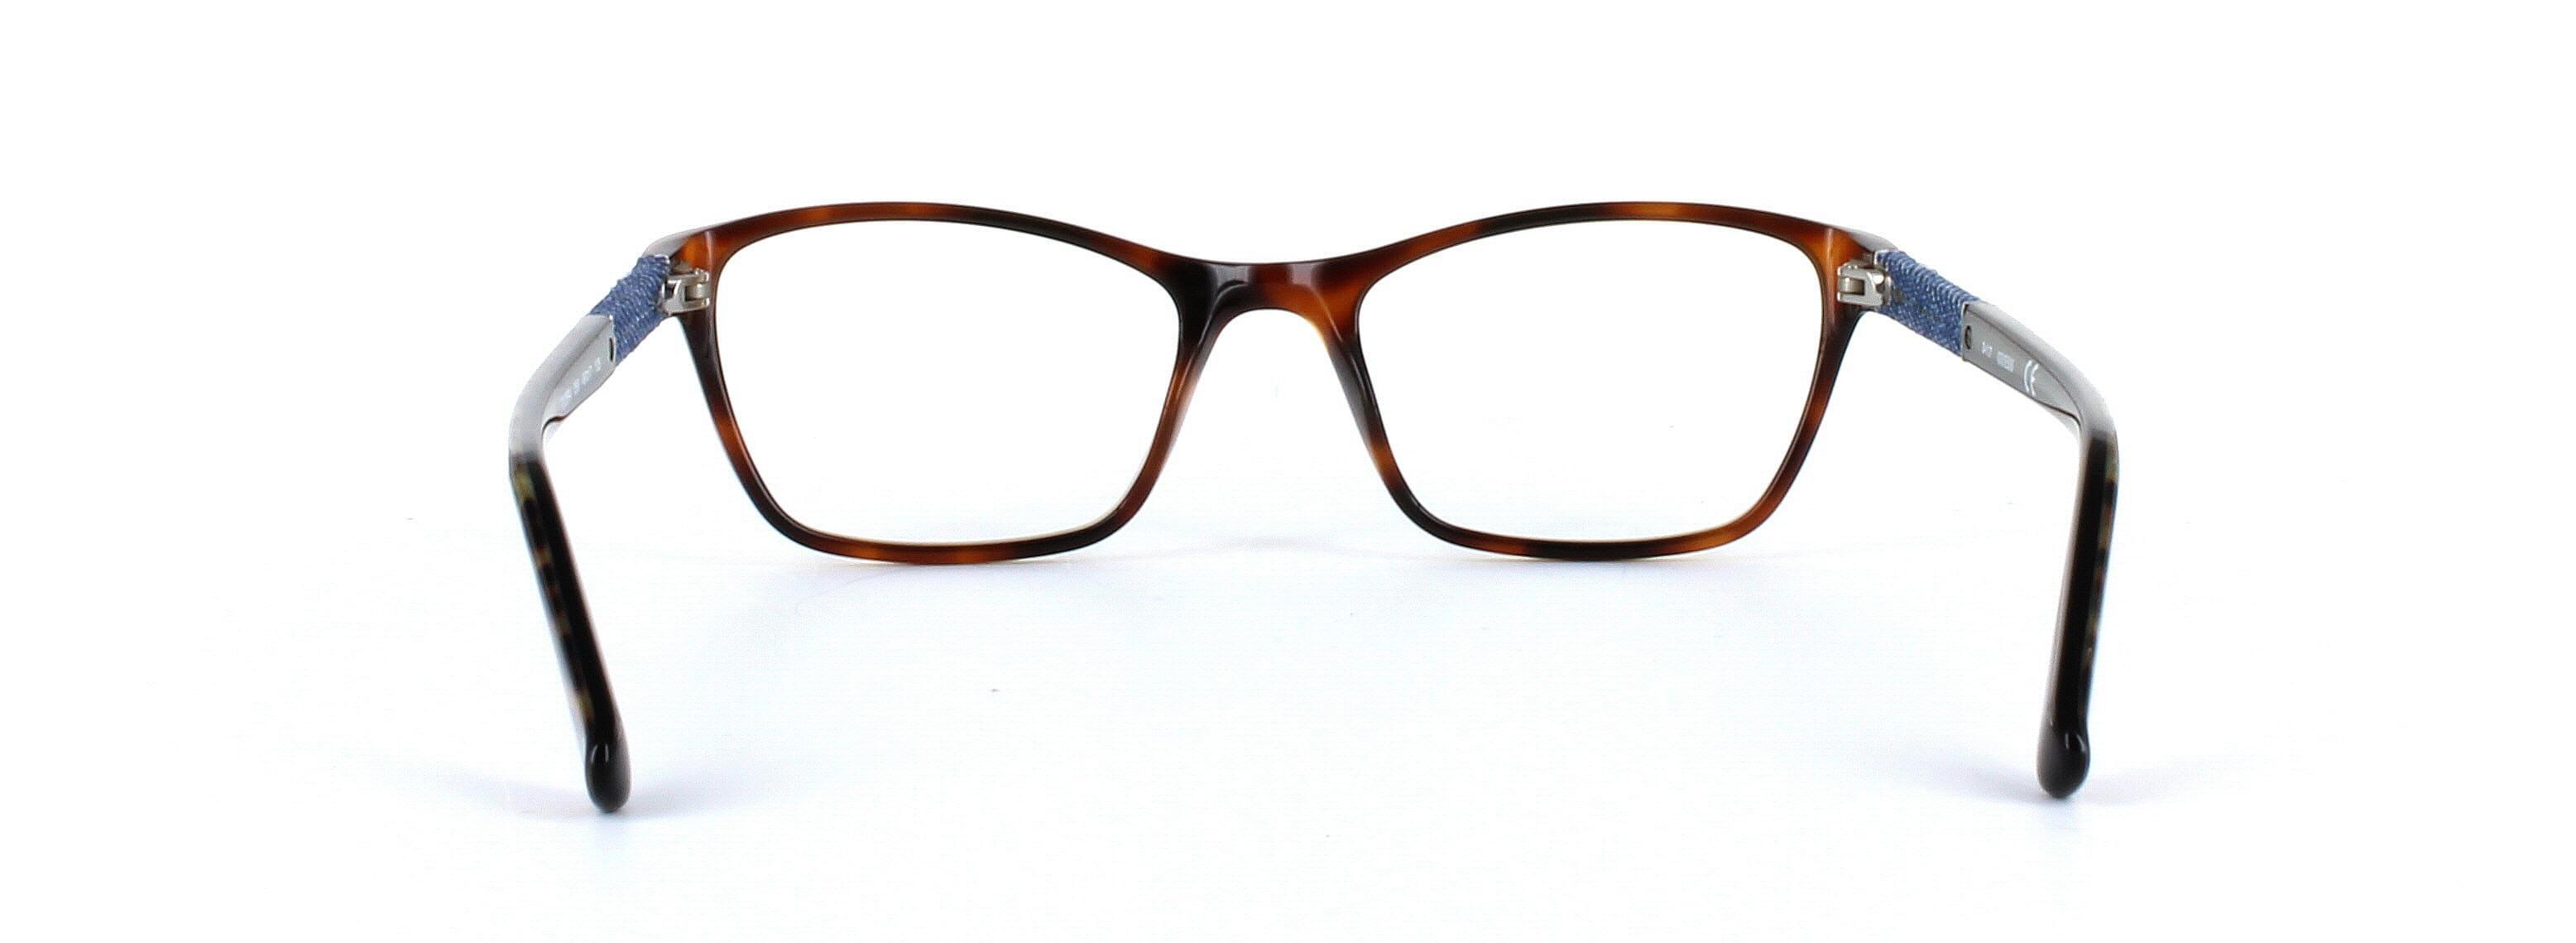 GUESS (GU2594-056) Brown Full Rim Rectangular Acetate Glasses - Image View 3